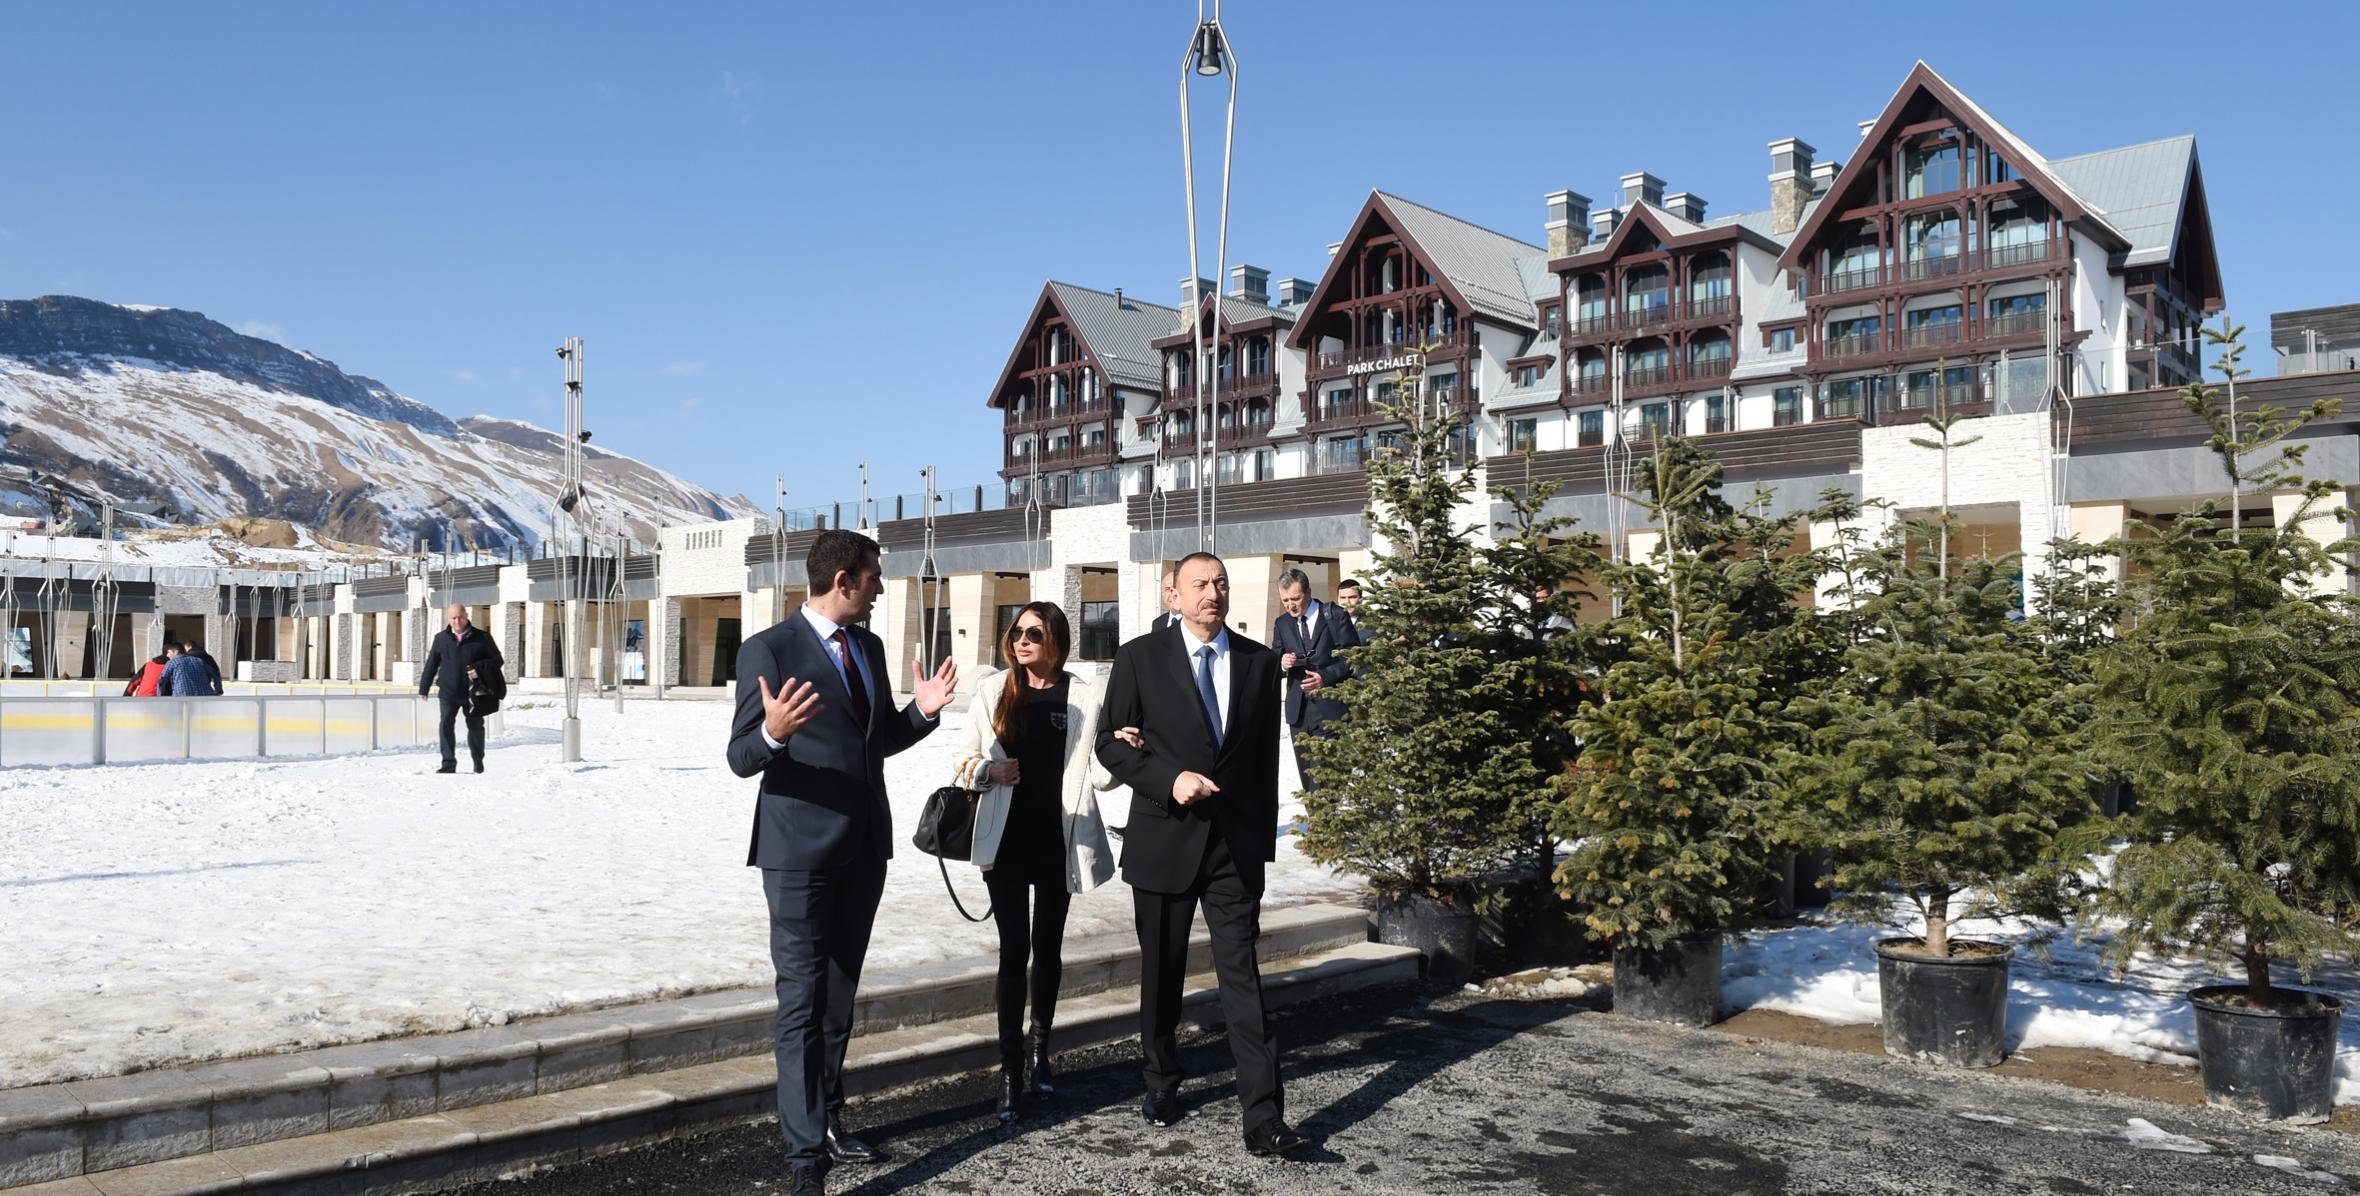 Ильхам Алиев и его супруга Мехрибан Алиева побывали в зимне-летнем туристическом комплексе «Шахдаг» в Гусарском районе